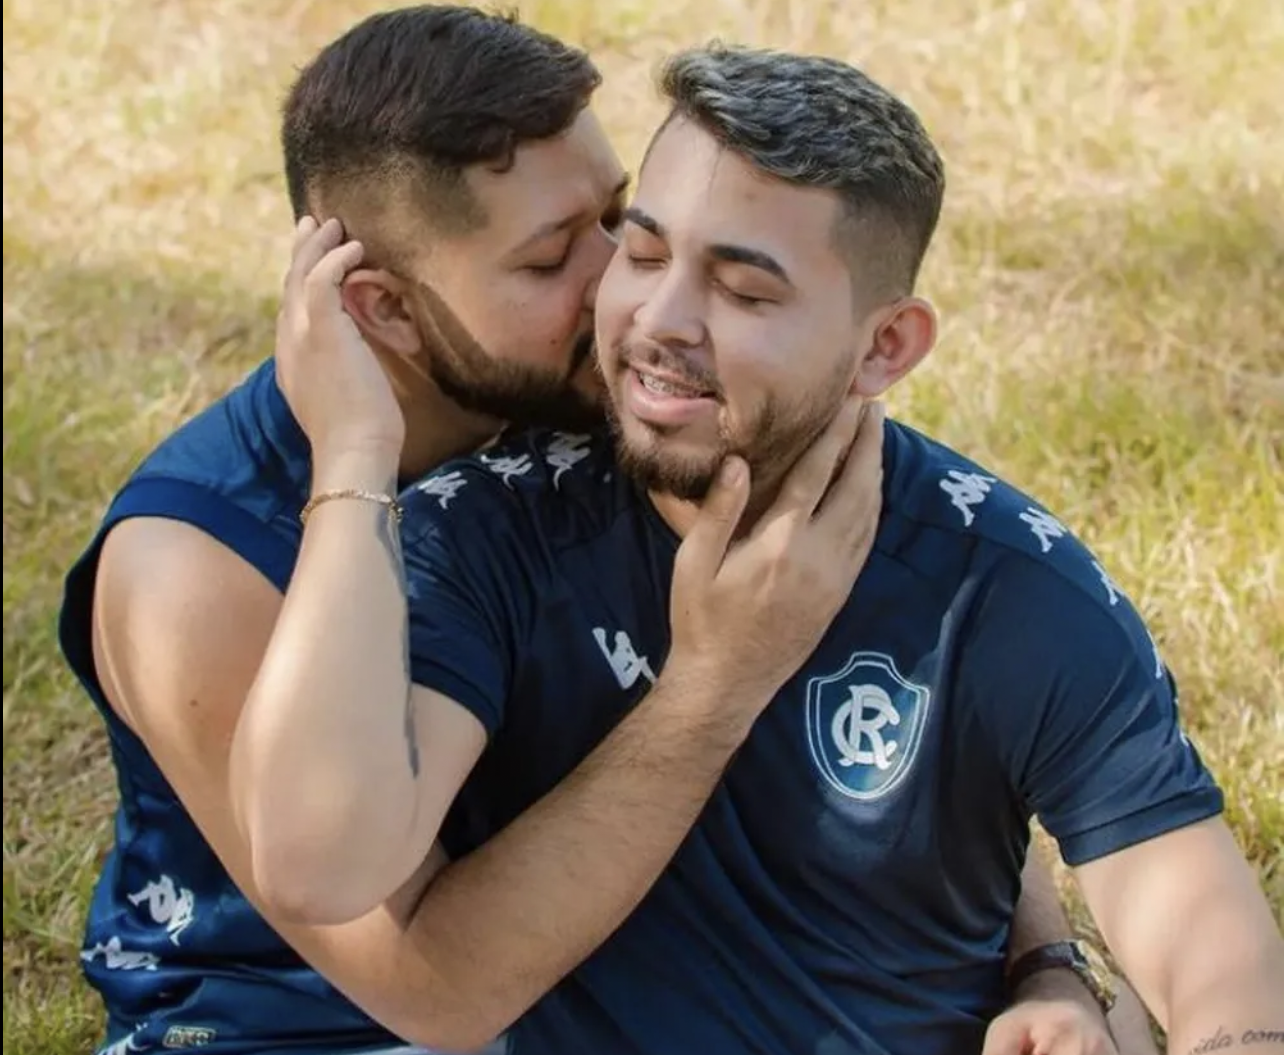 Una pareja futbolista brasileña sufre una oleada de mensajes homófobos